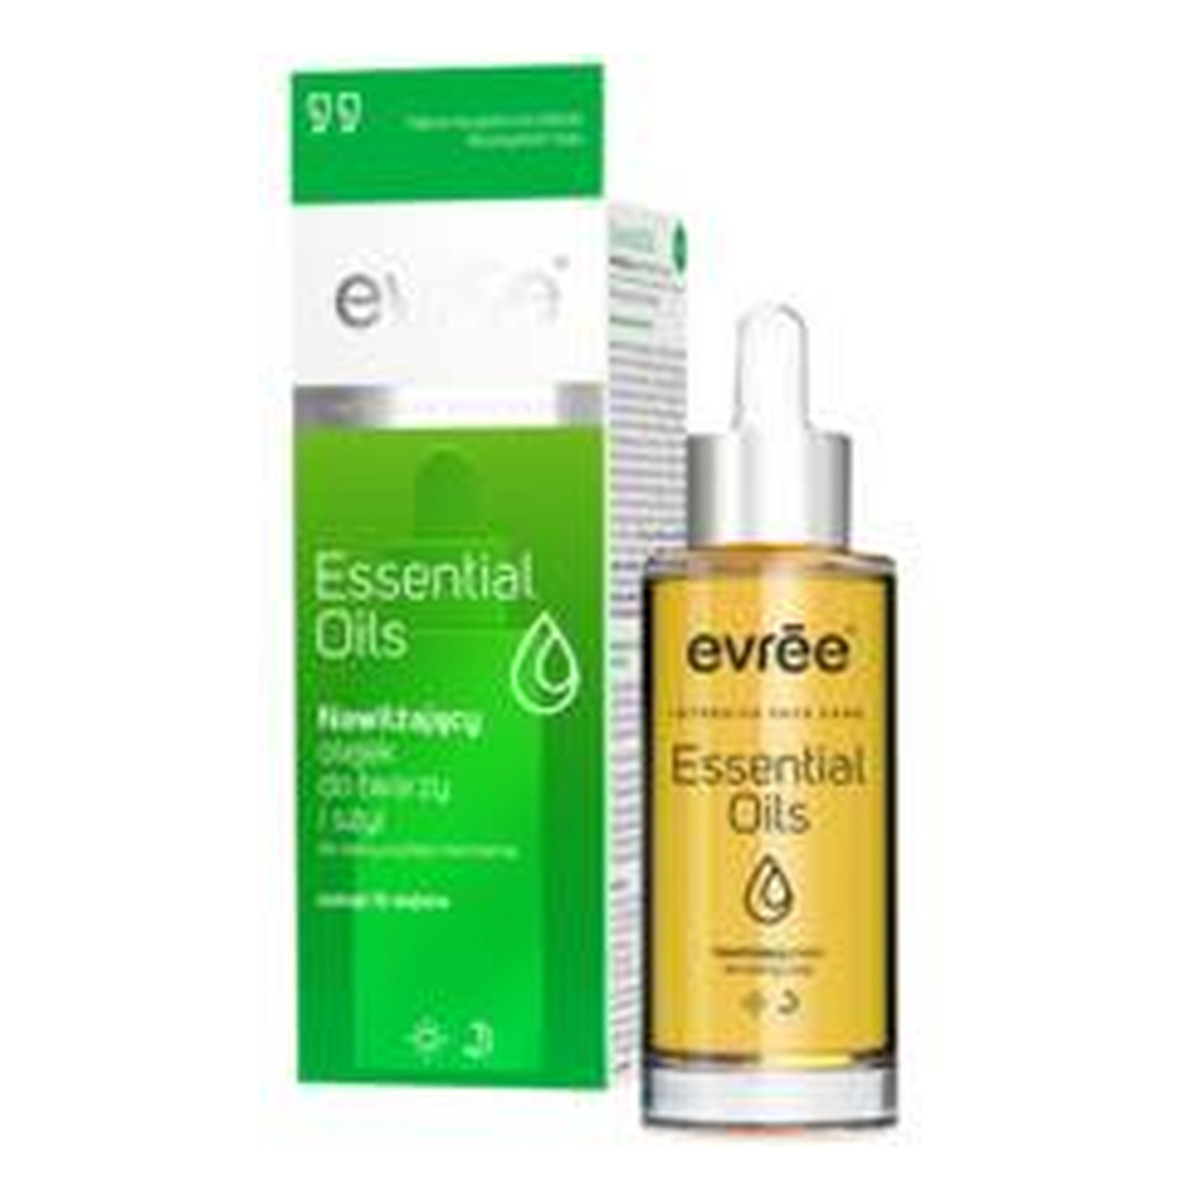 Evree Intensive Facial Care Essential Oils Nawilżający Olejek Do Twarzy i Szyi 30ml